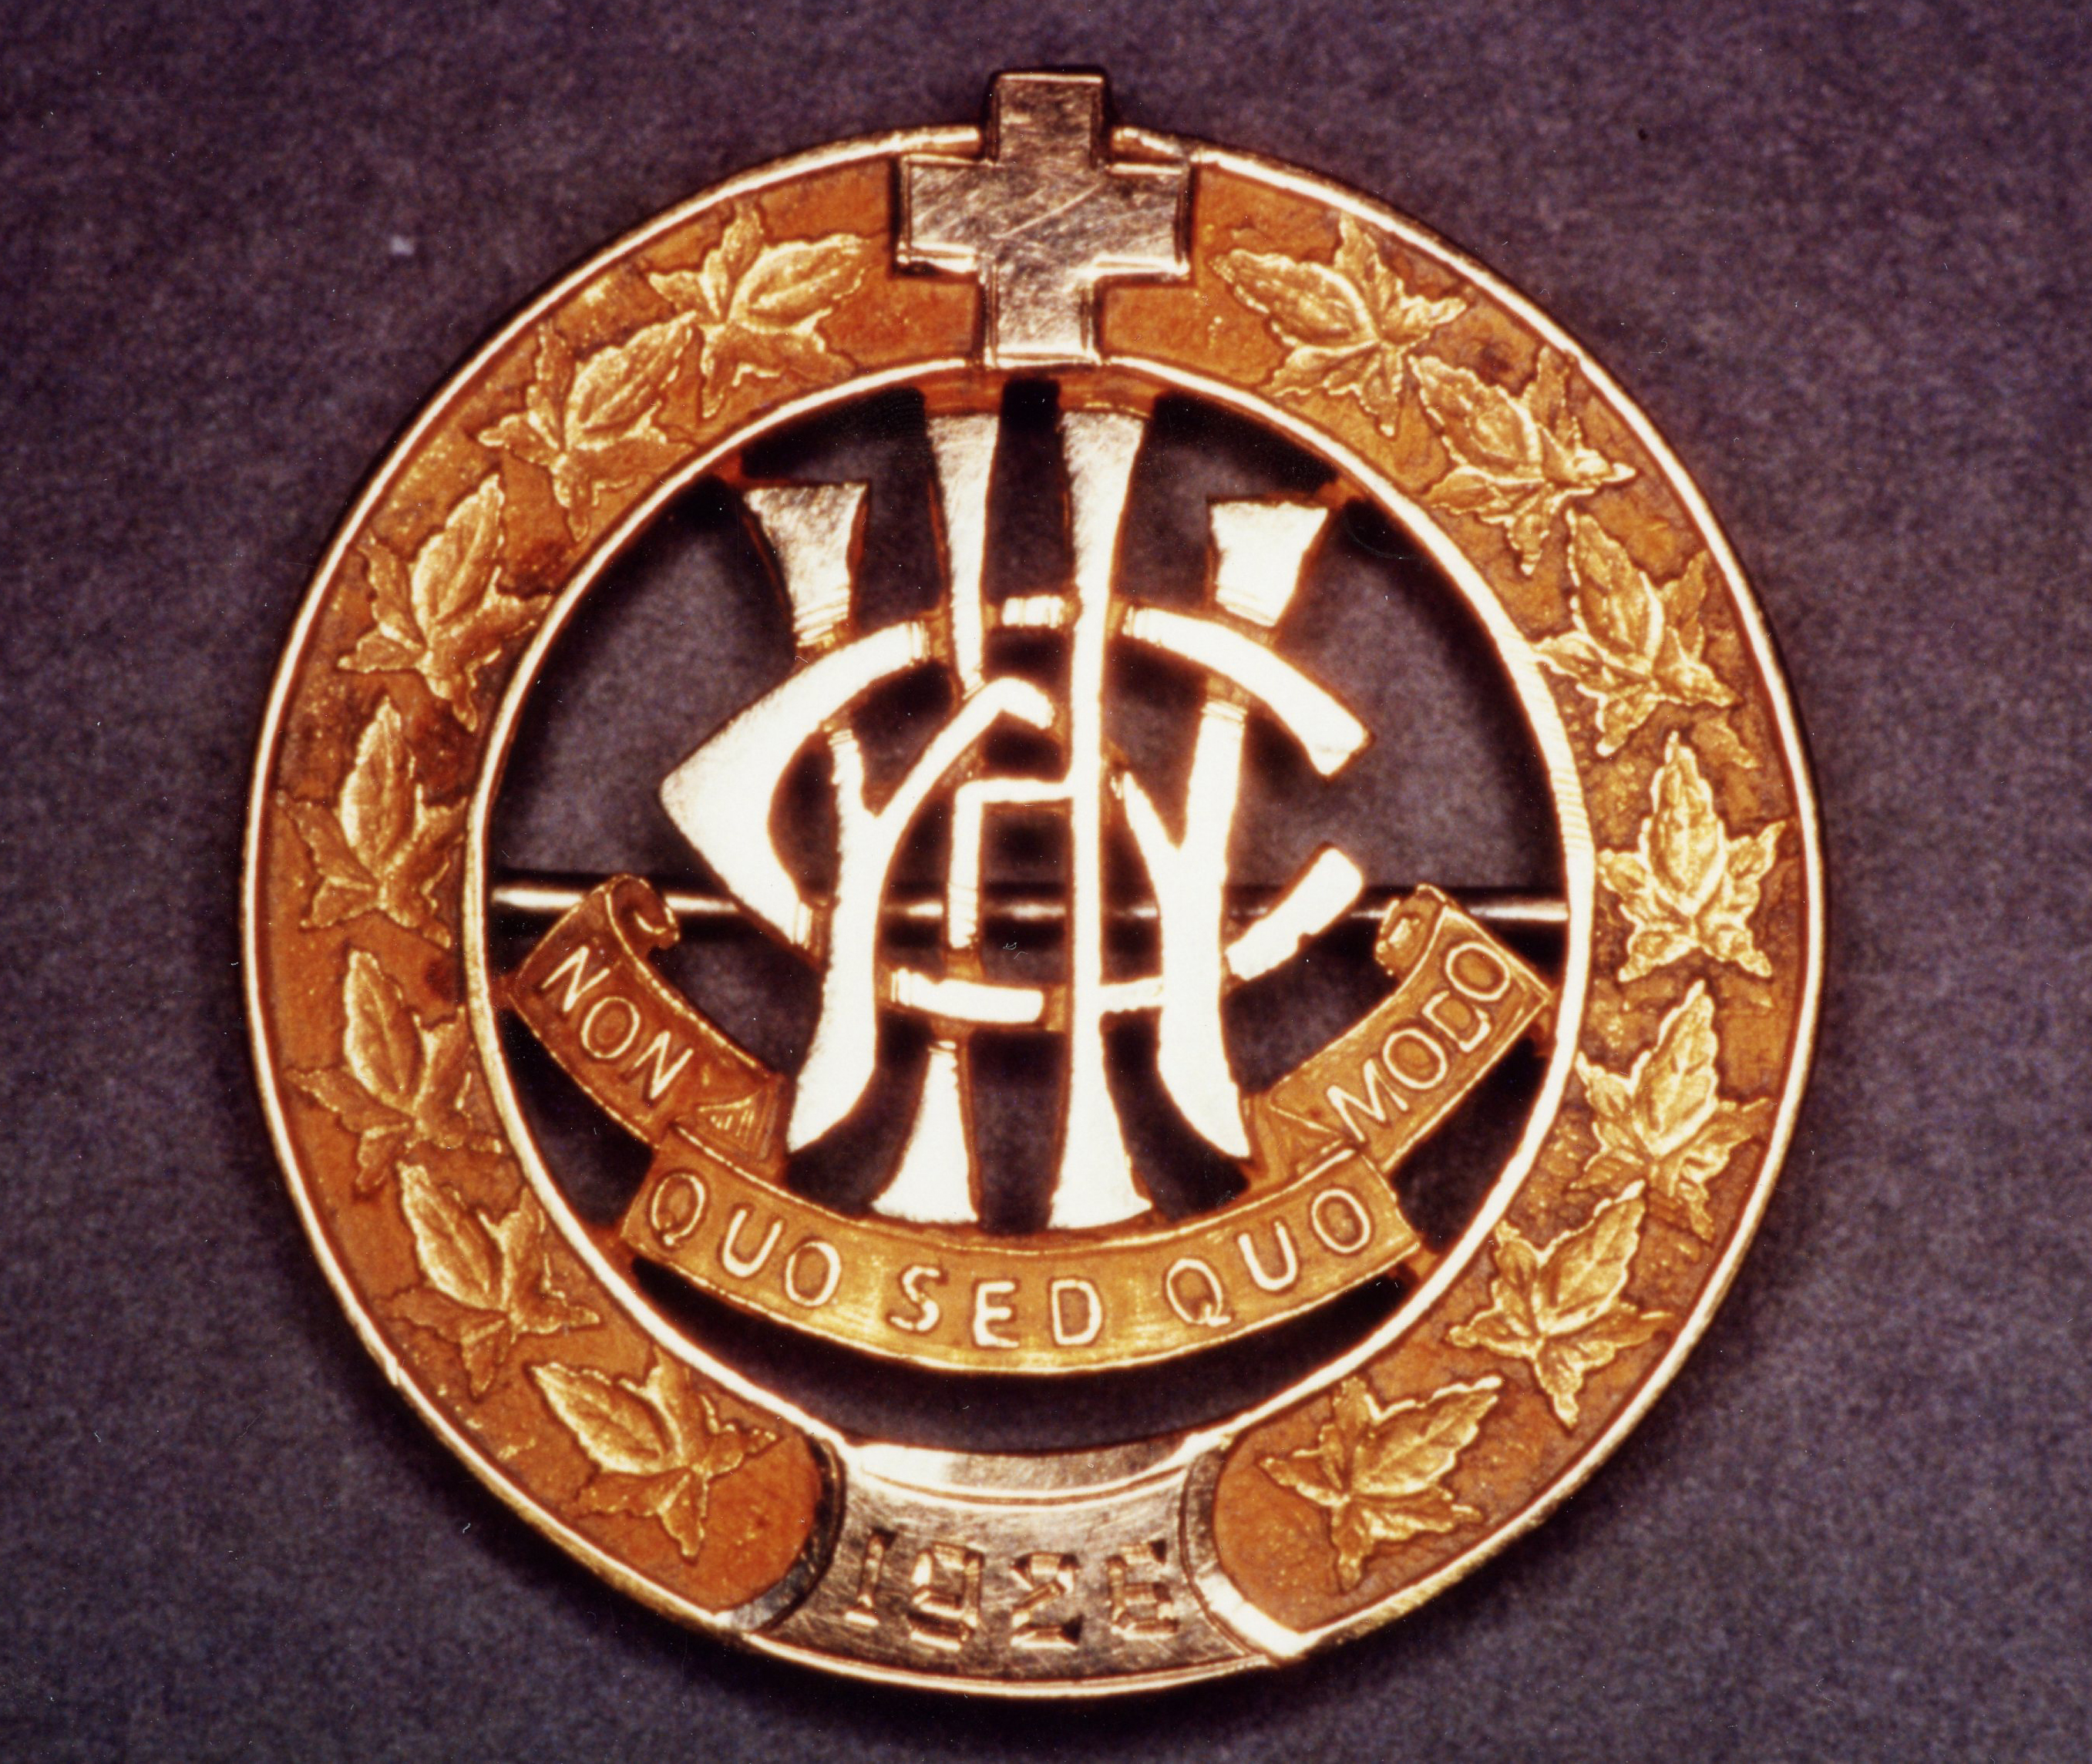 Épingle circulaire, bordée de feuilles et couronnée d’une croix. Les lettres W, C et H sont entrelacées au-dessus de la devise.